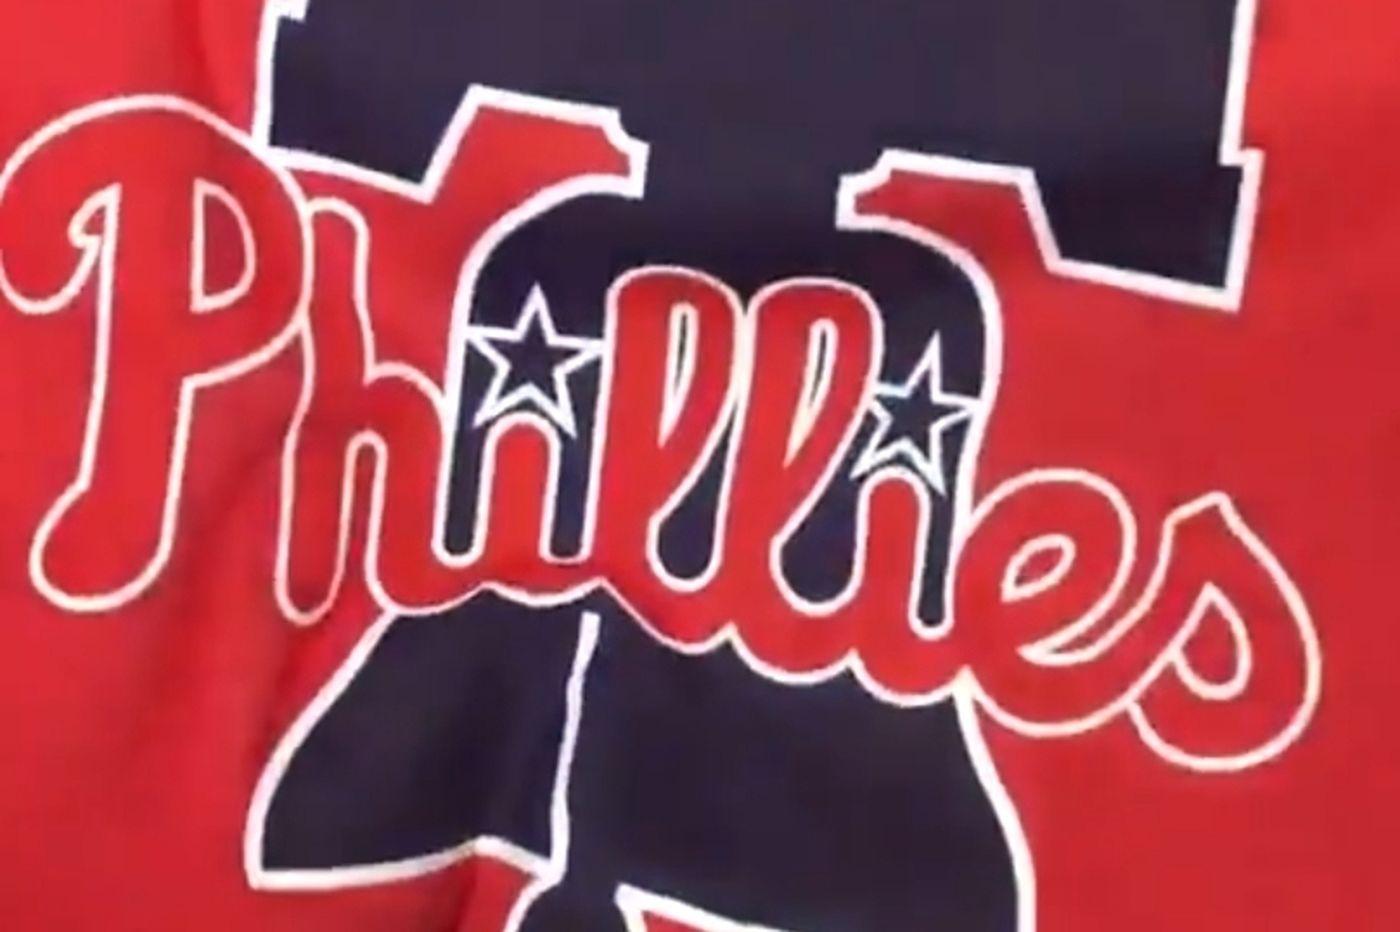 Phillies Logo - Phillies reveal new primary logo